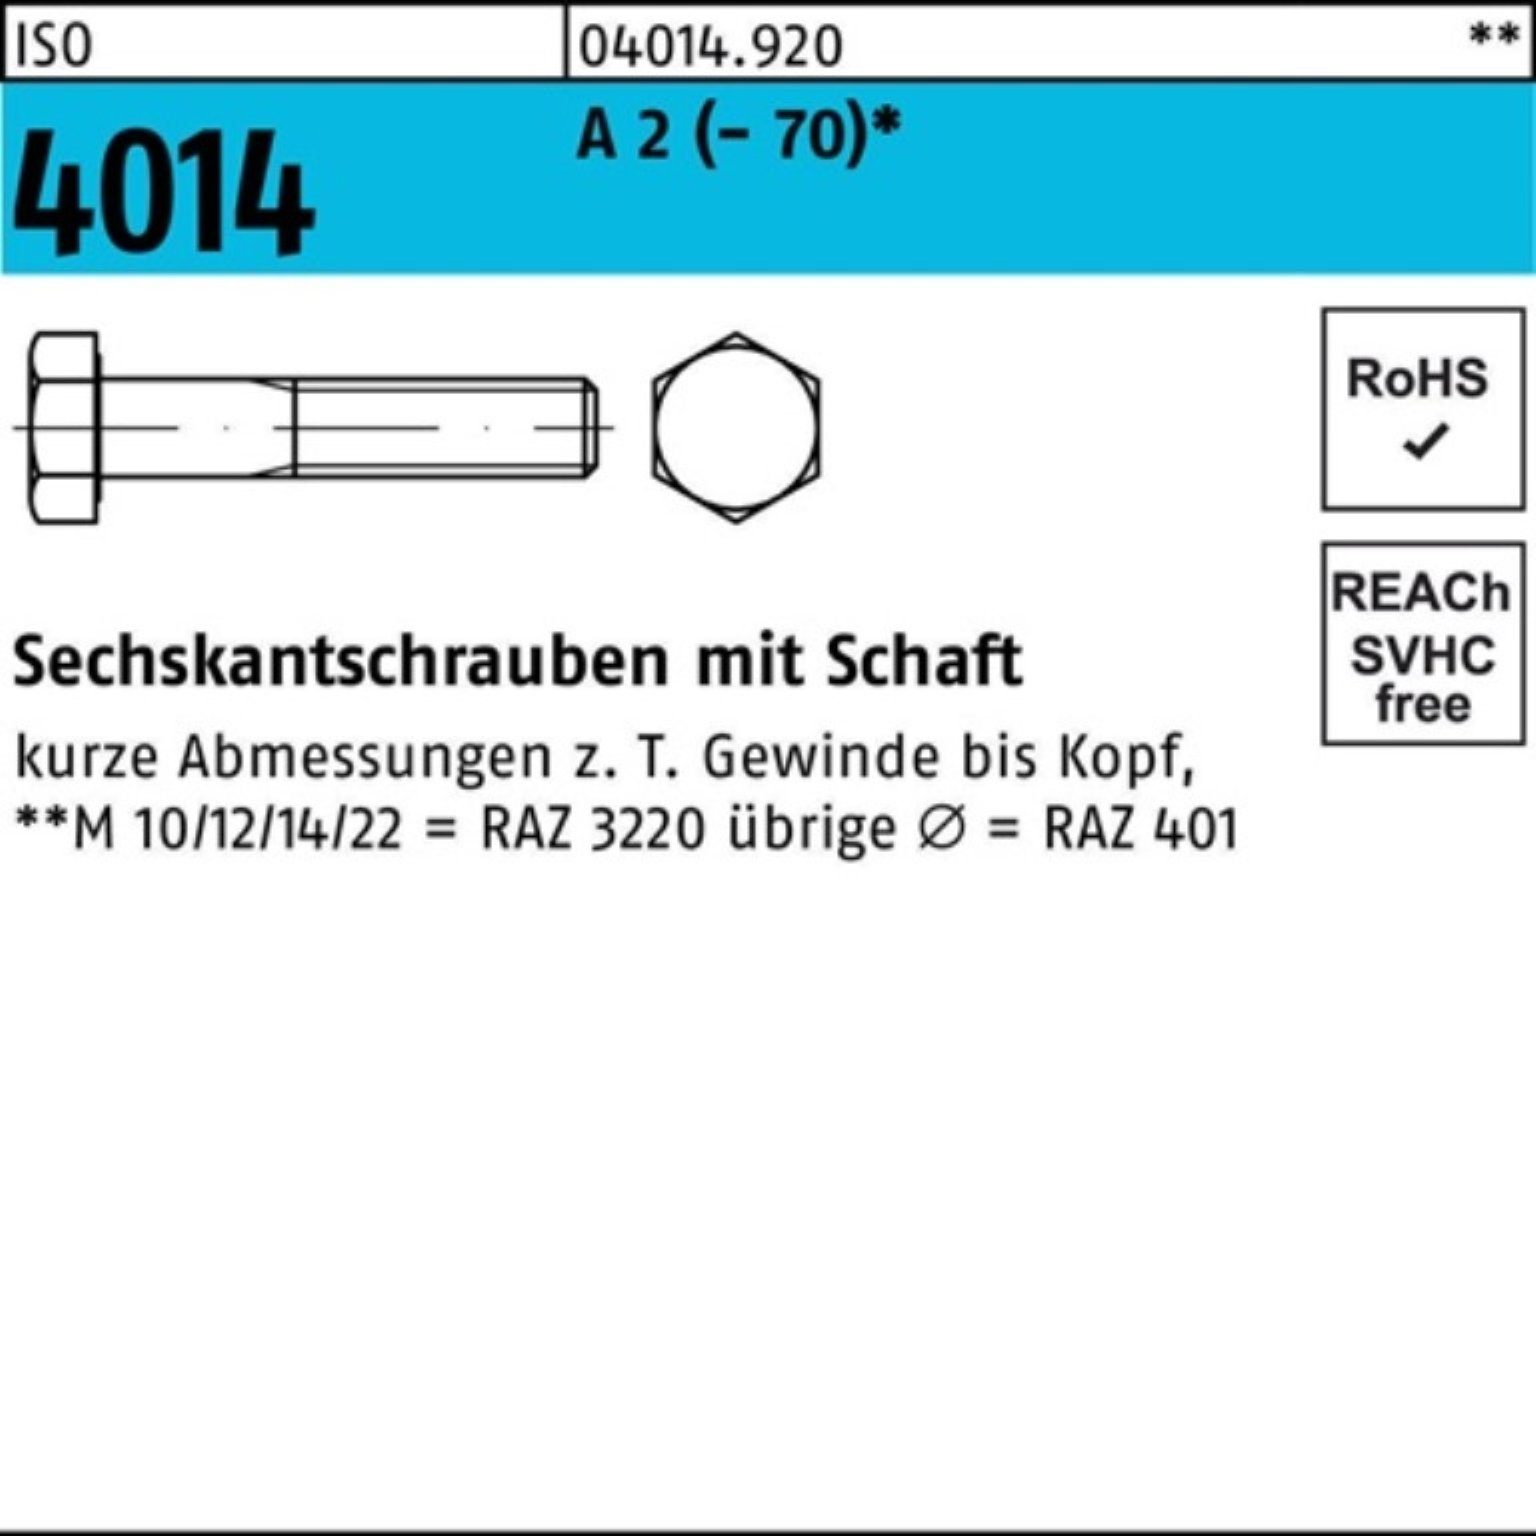 Bufab Sechskantschraube 100er Pack Sechskantschraube ISO 4014 Schaft M8x 60 A 2 (70) 100 St